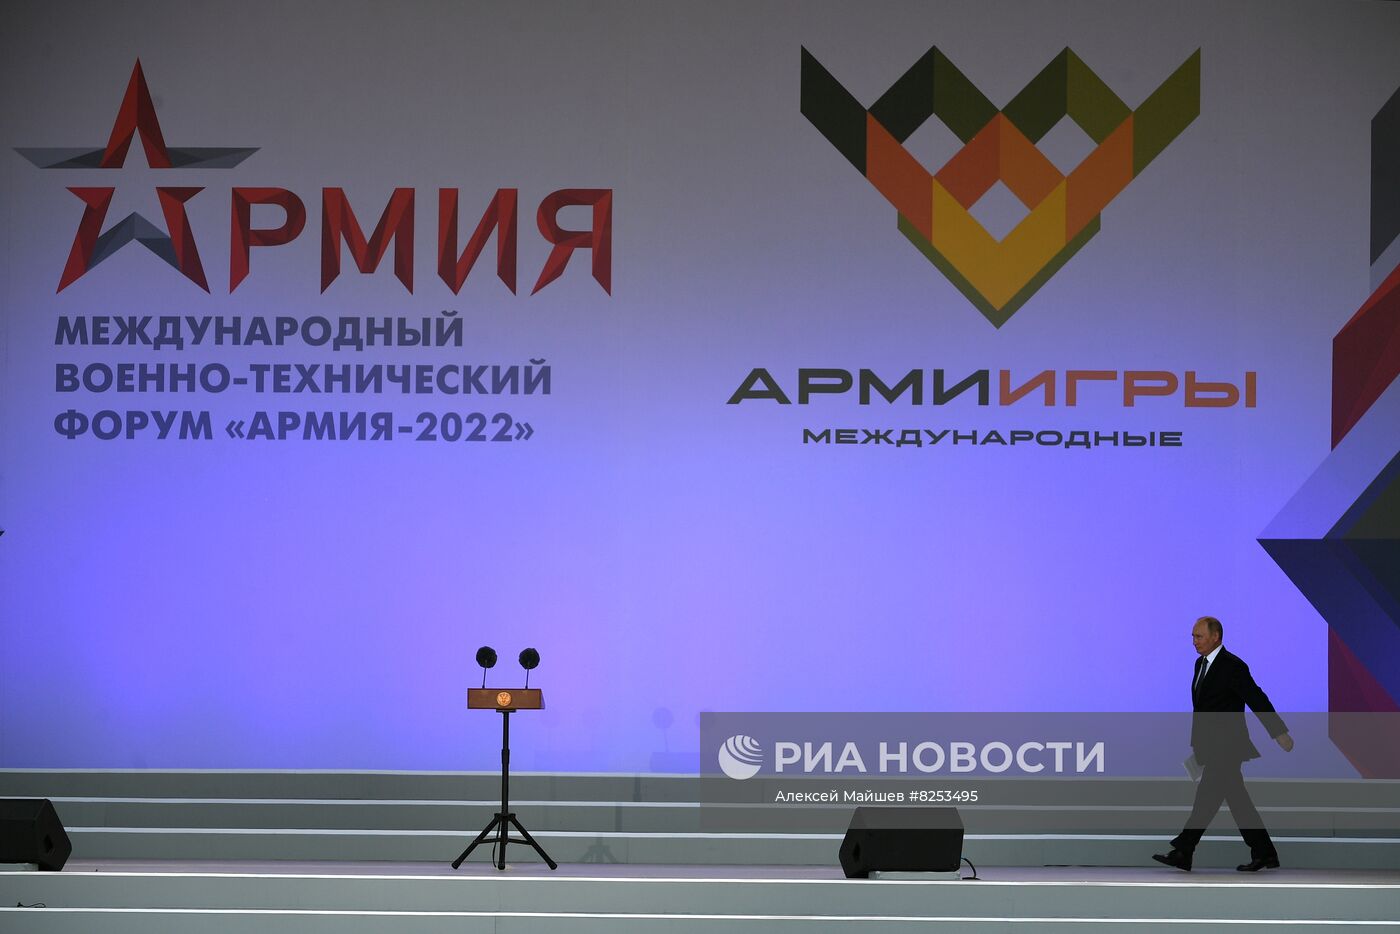 Президент РФ В. Путин принял участие в открытии форума "Армия-2022"